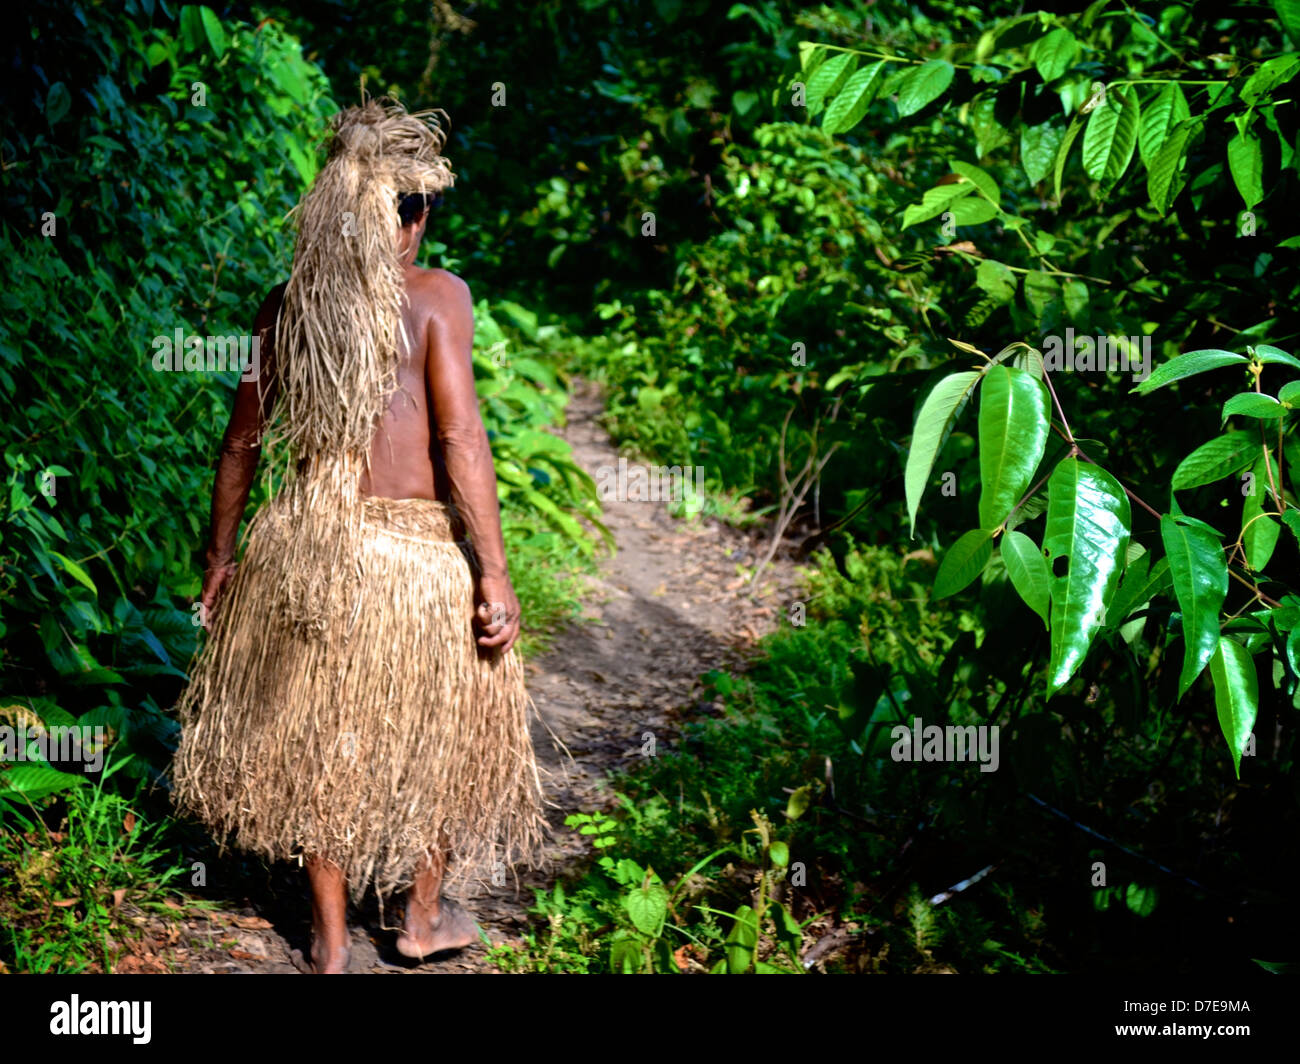 Un membre de la tribu Yagua dans la forêt amazonienne près d Iquitos Pérou Photo Stock Alamy